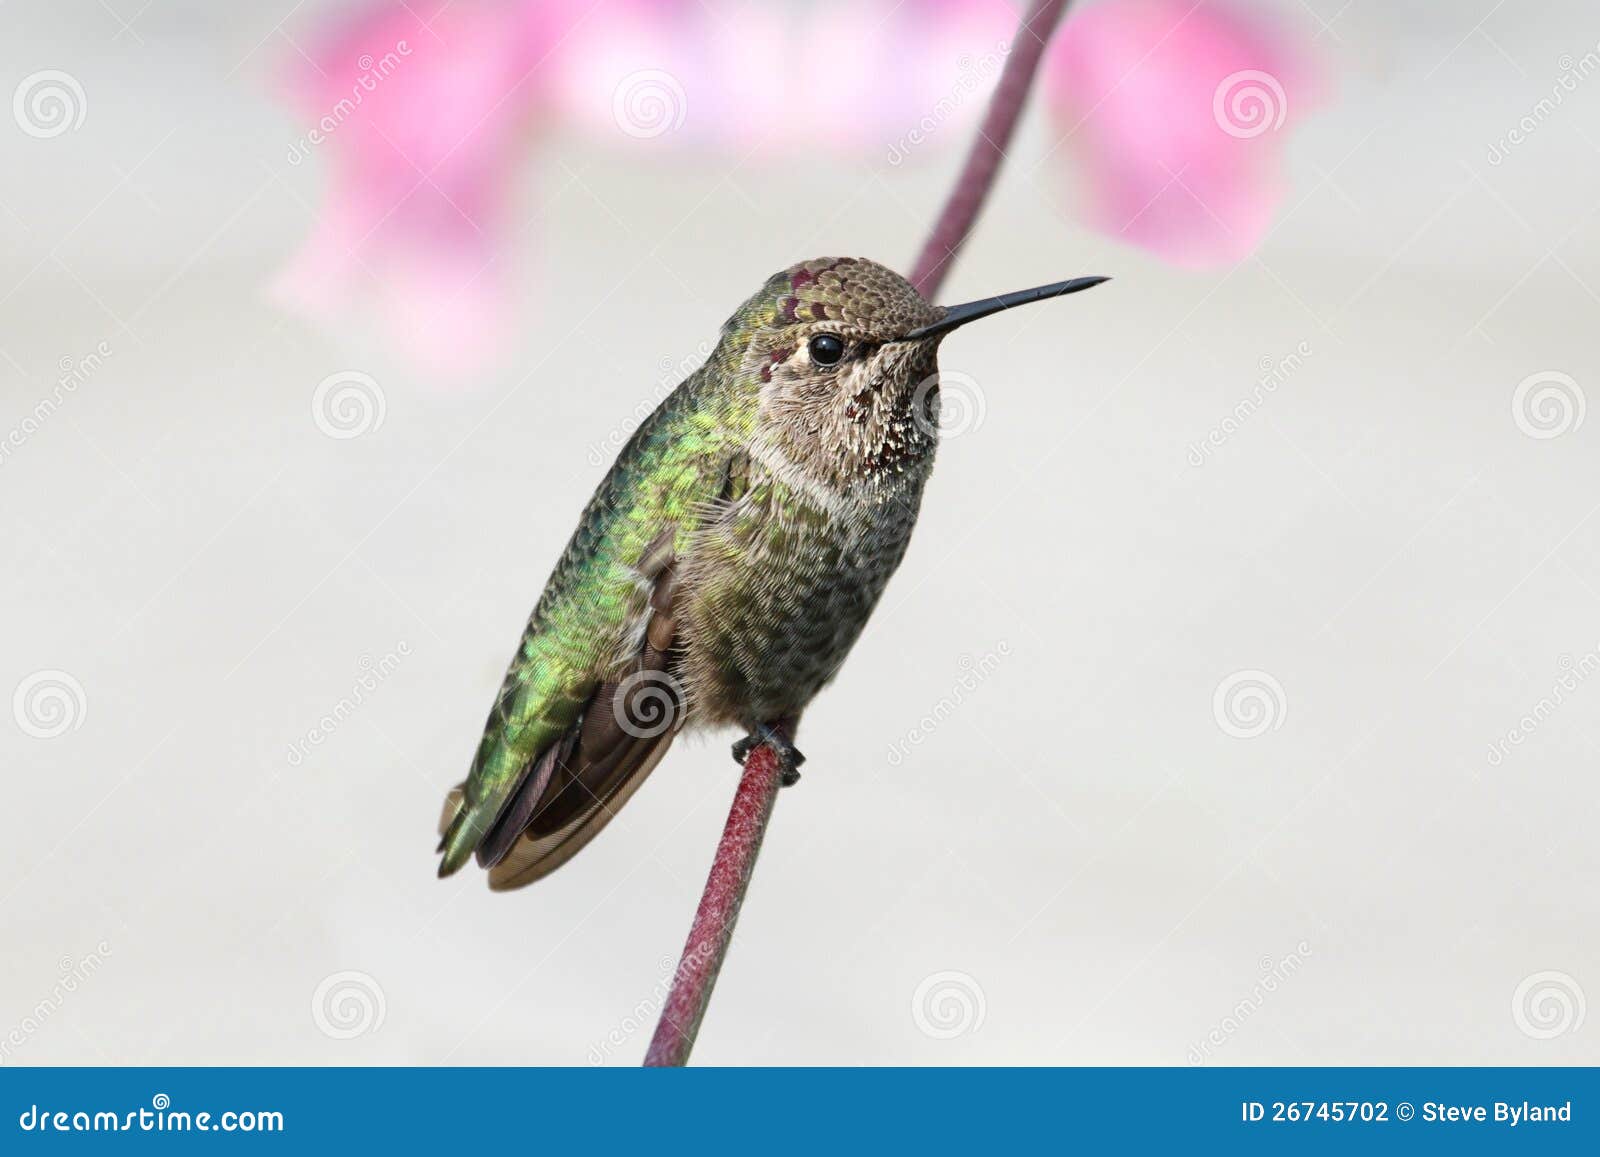 annas hummingbird (calypte anna)